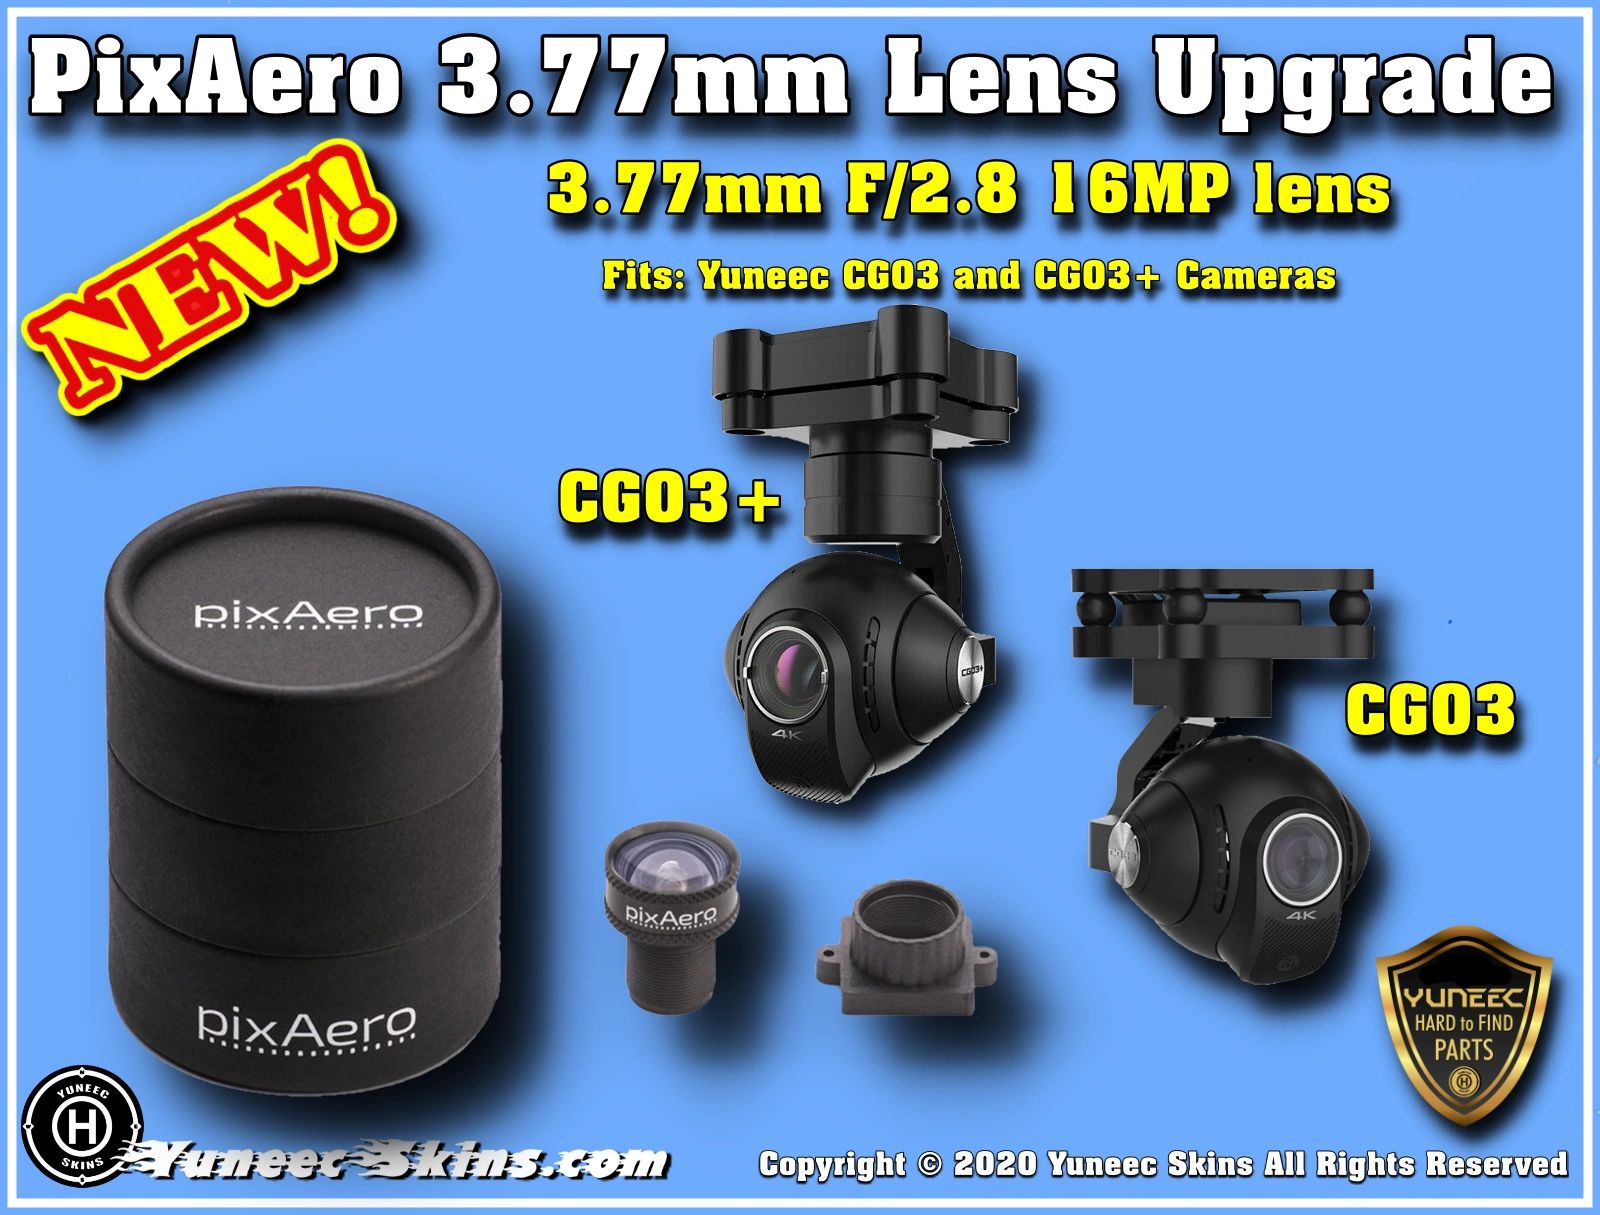 YI 4K / 4k+ no distortion 4.2mm PIXAERO DUO lens for YI manual focus 